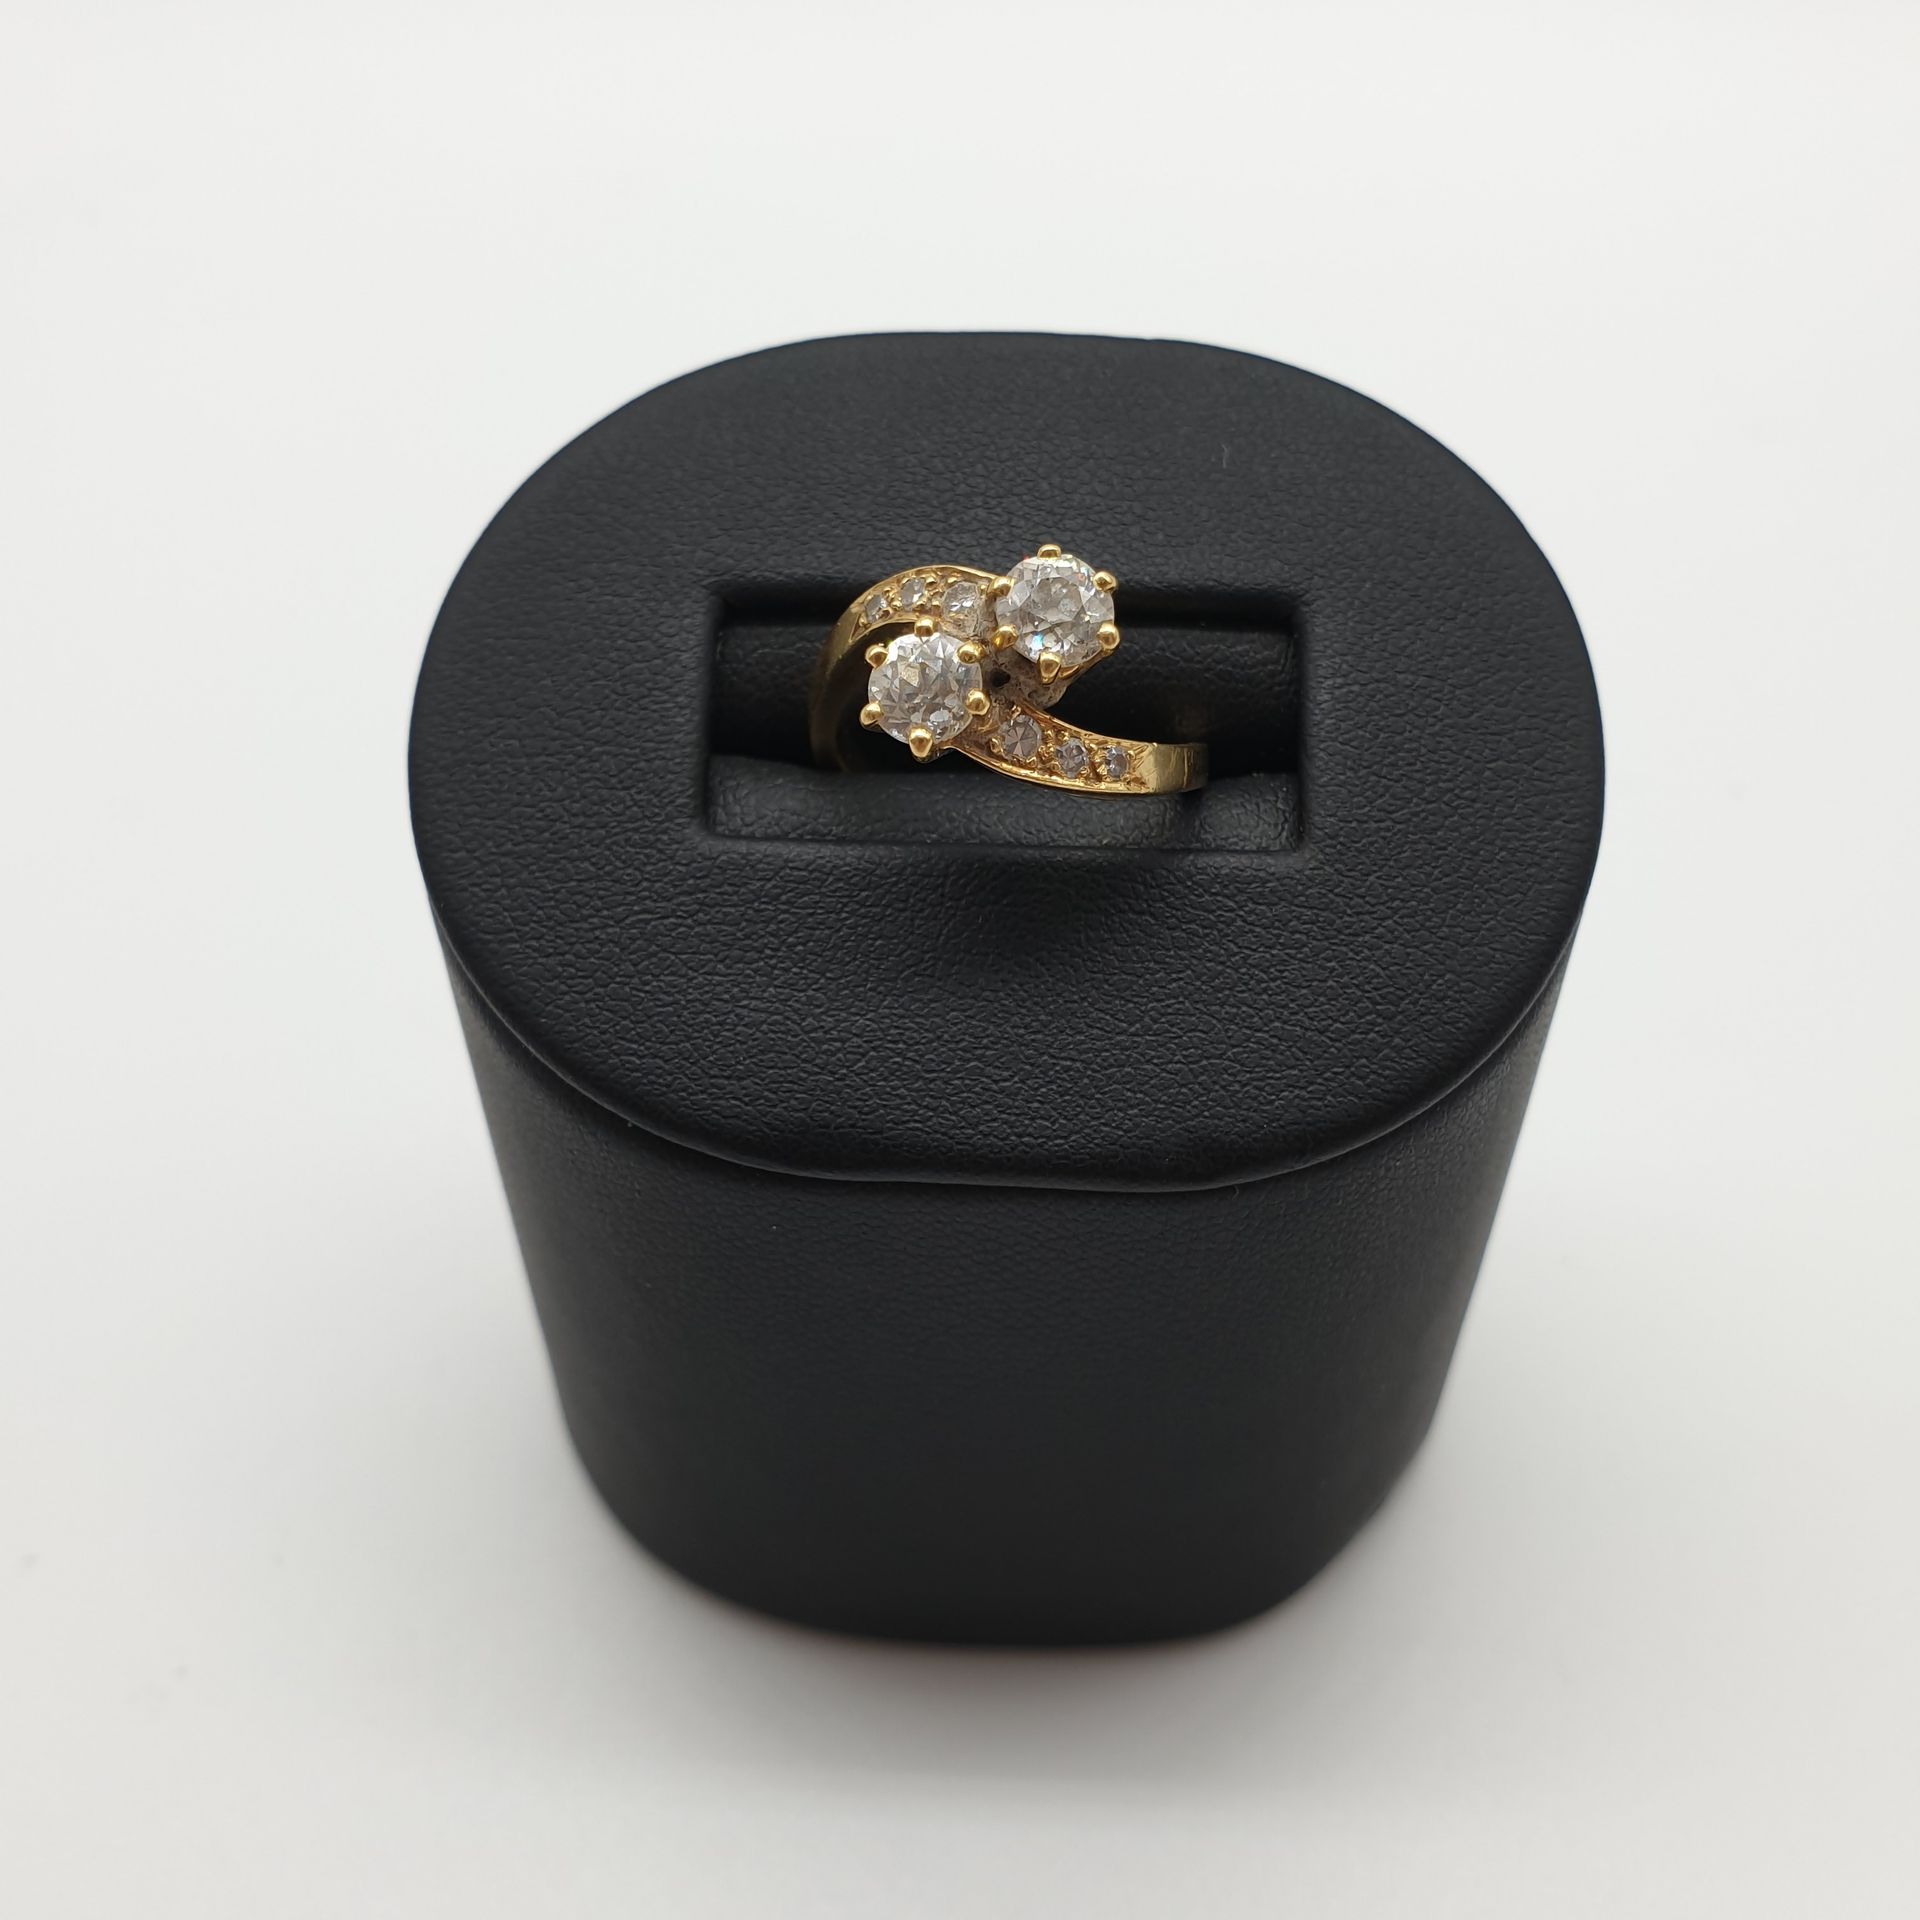 Null 
750°黄金戒指，镶嵌两颗老式切割钻石，每颗约0.30克拉，配以玫瑰切割钻石。 




毛重 : 4,89 g





法国作品




TDD&hellip;